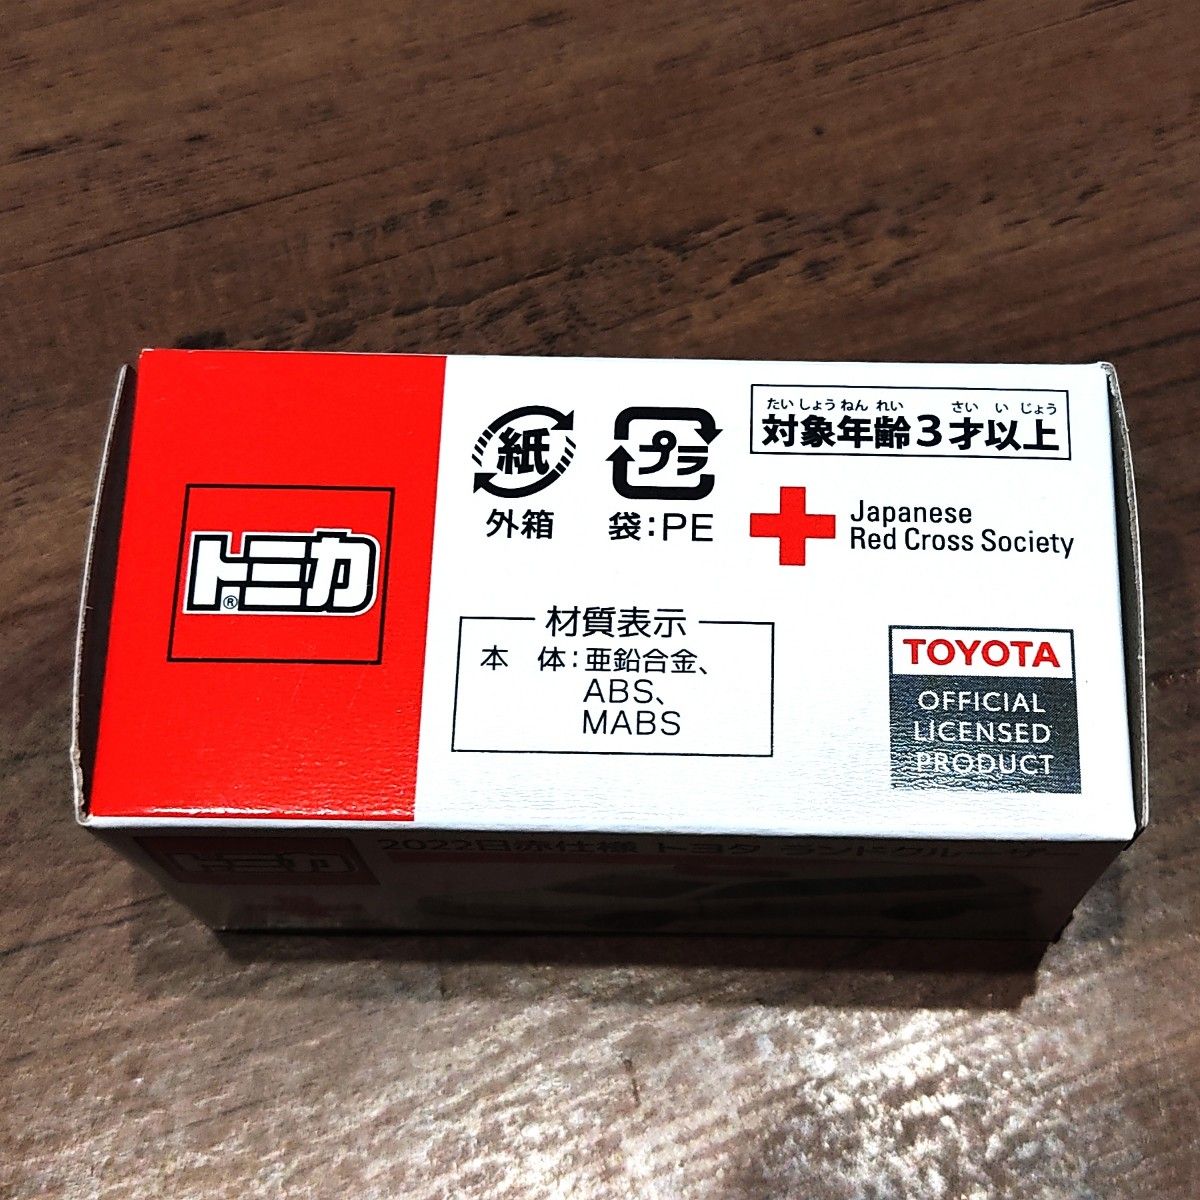 【激レア】トミカ 日赤仕様トヨタ ランドクルーザー 日本赤十字社